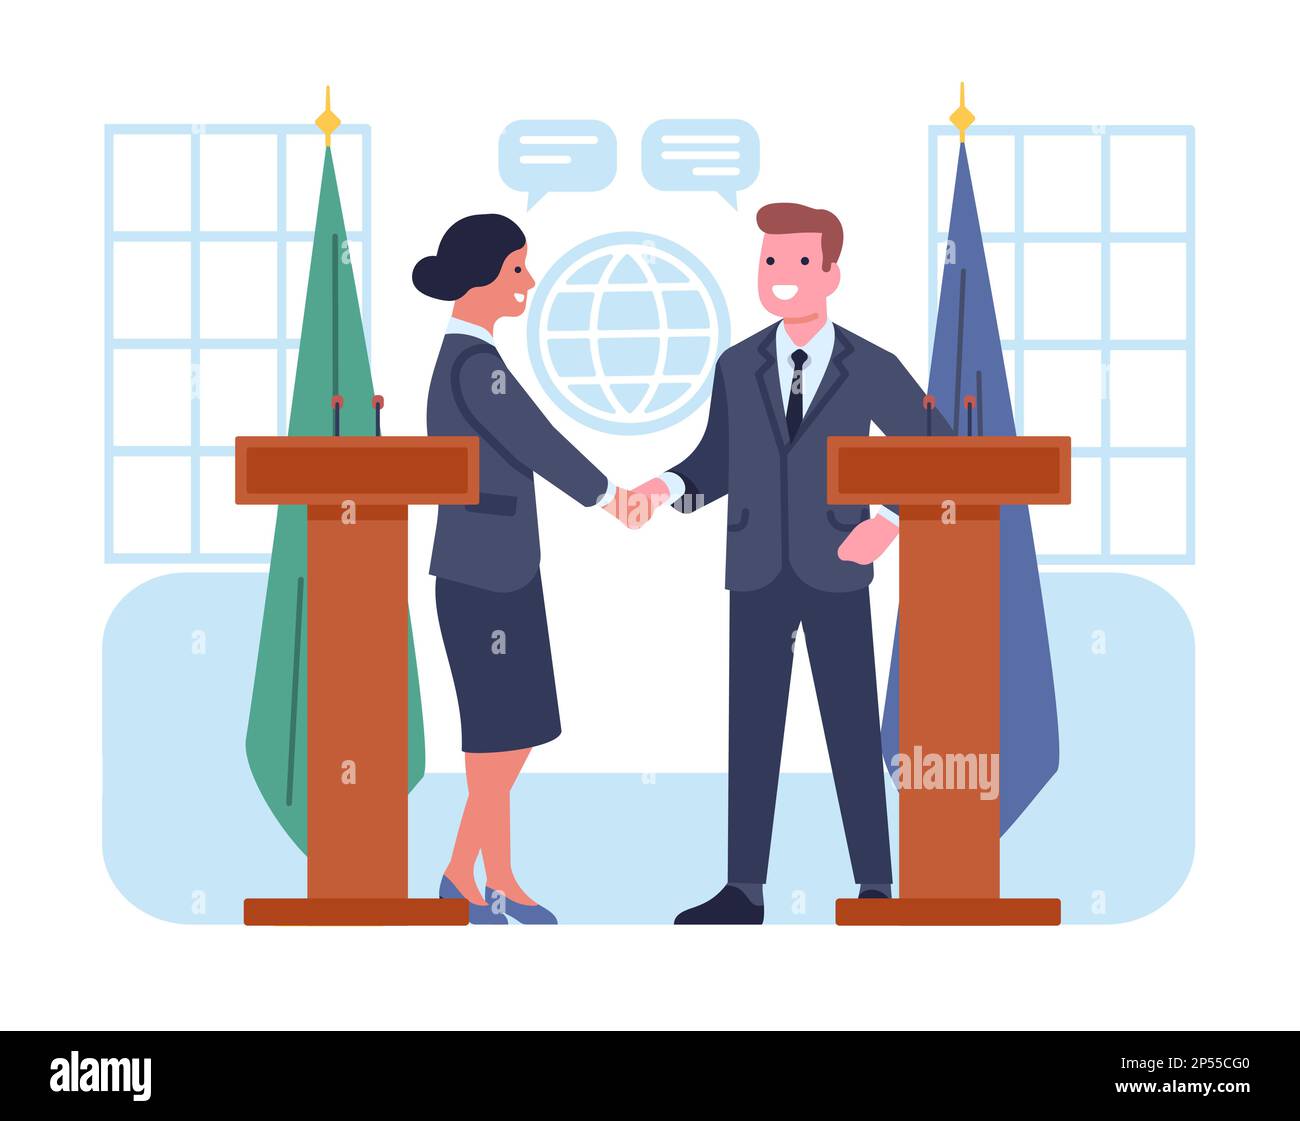 Diplomaten treffen sich zu internationalen Verhandlungen und zur Unterzeichnung von Abkommen. Mann und Frau bei Tribunen, die sich die Hand schütteln. Politisches Abkommen. Weltdiplomatie Stock Vektor